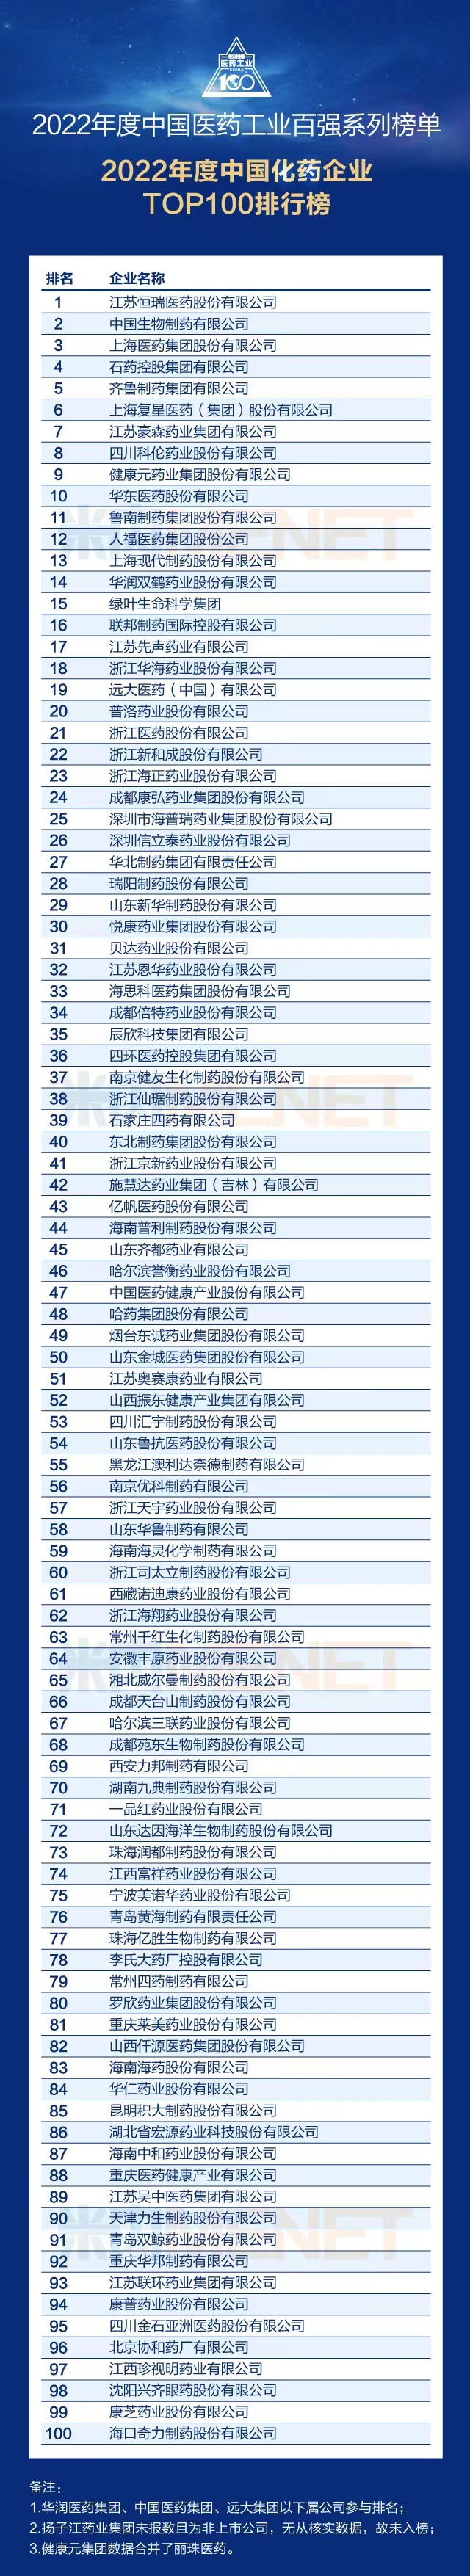 热烈祝贺康普药业荣列“2022年度中国化药企业TOP100排行榜”